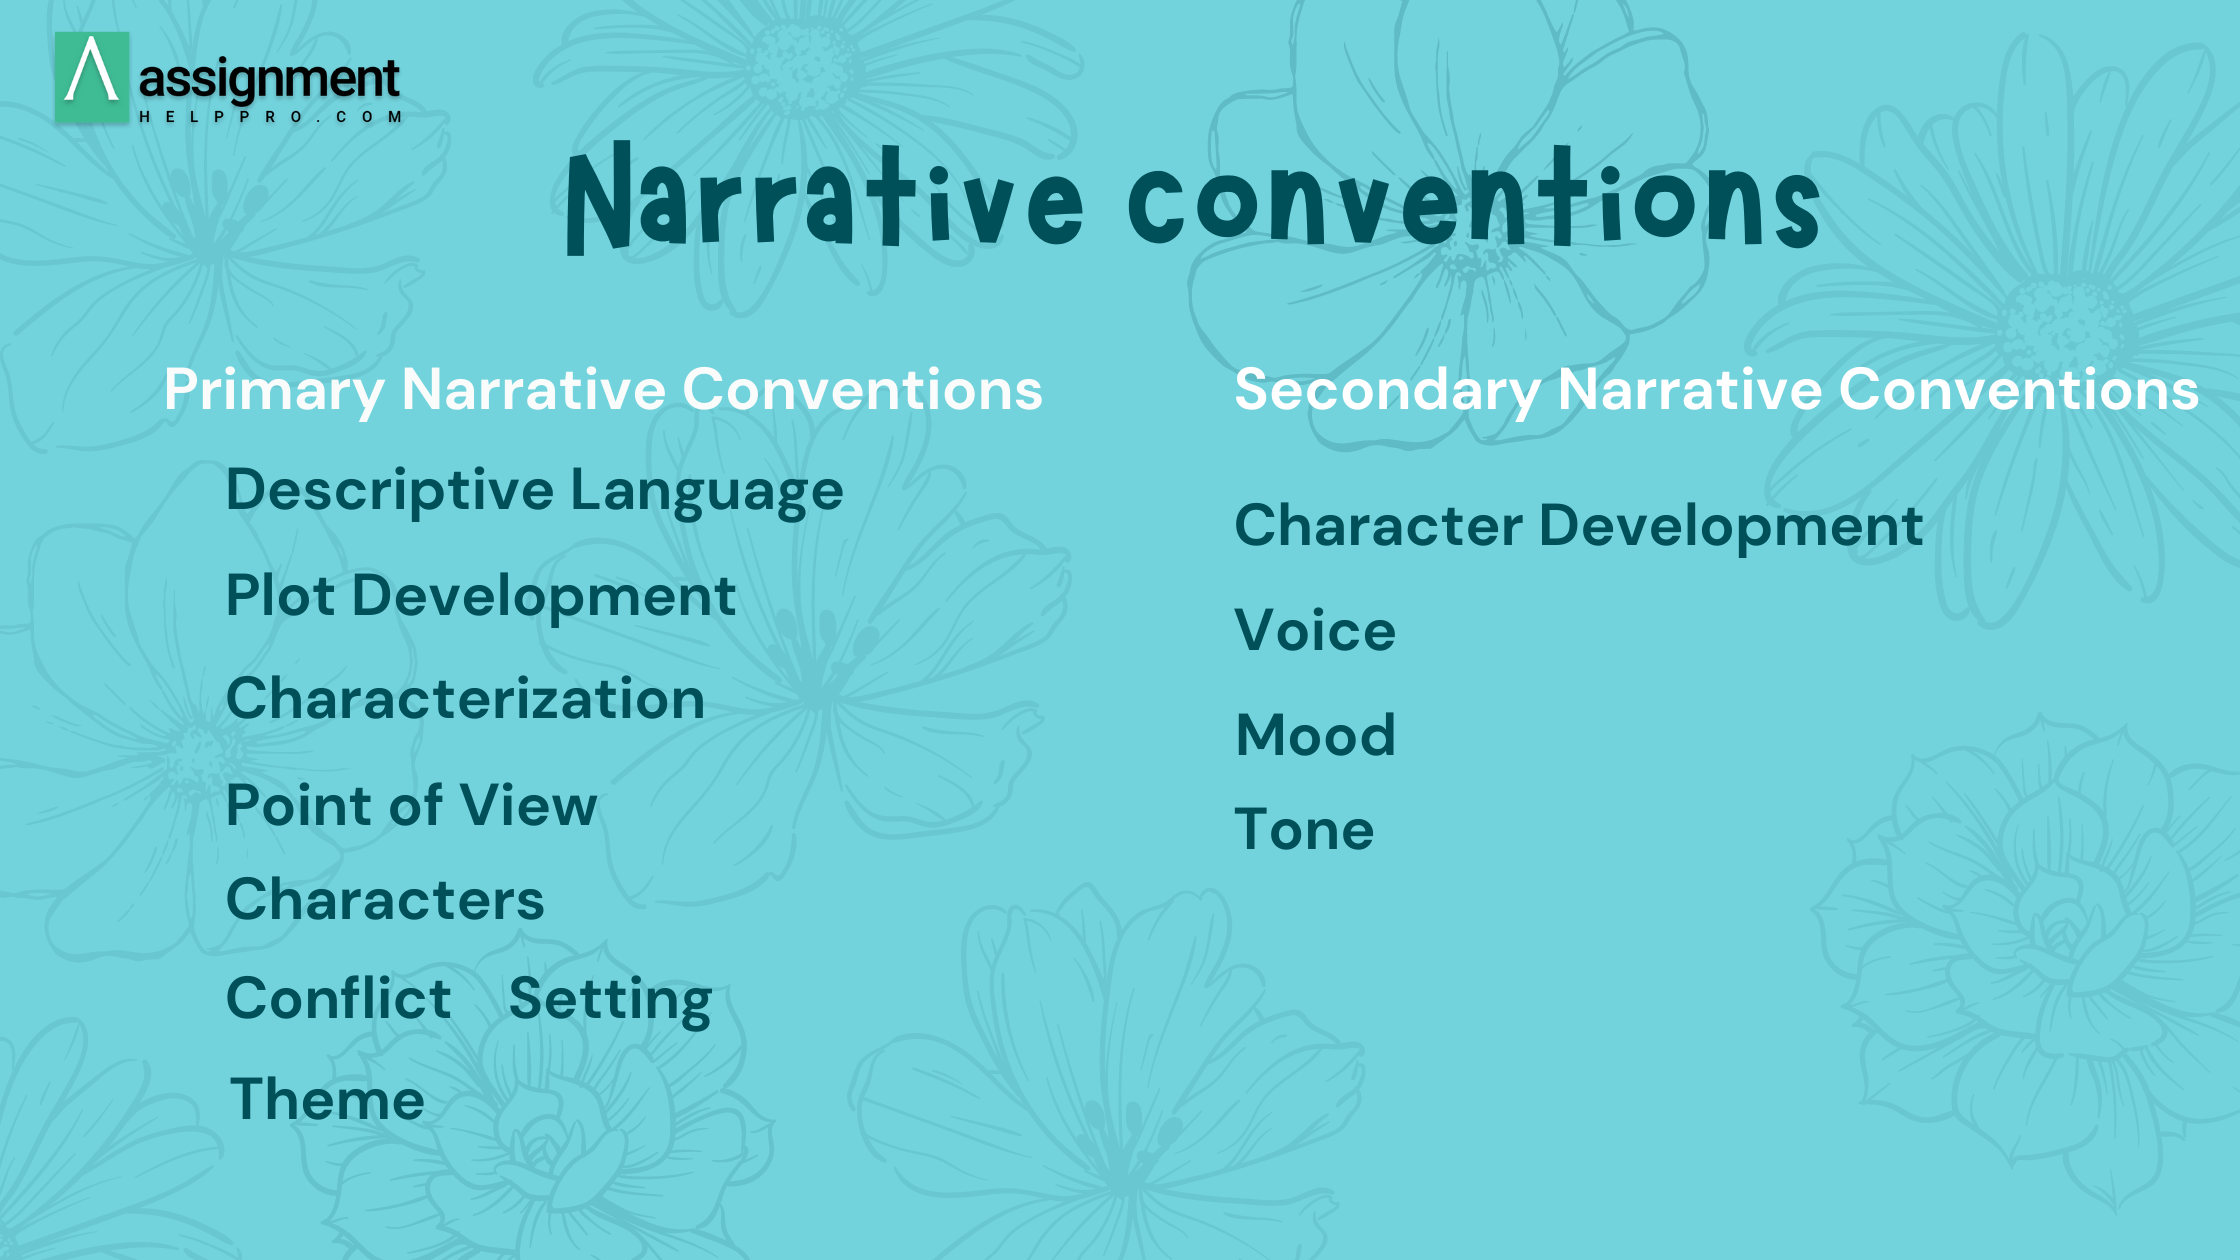 Narrative conventions